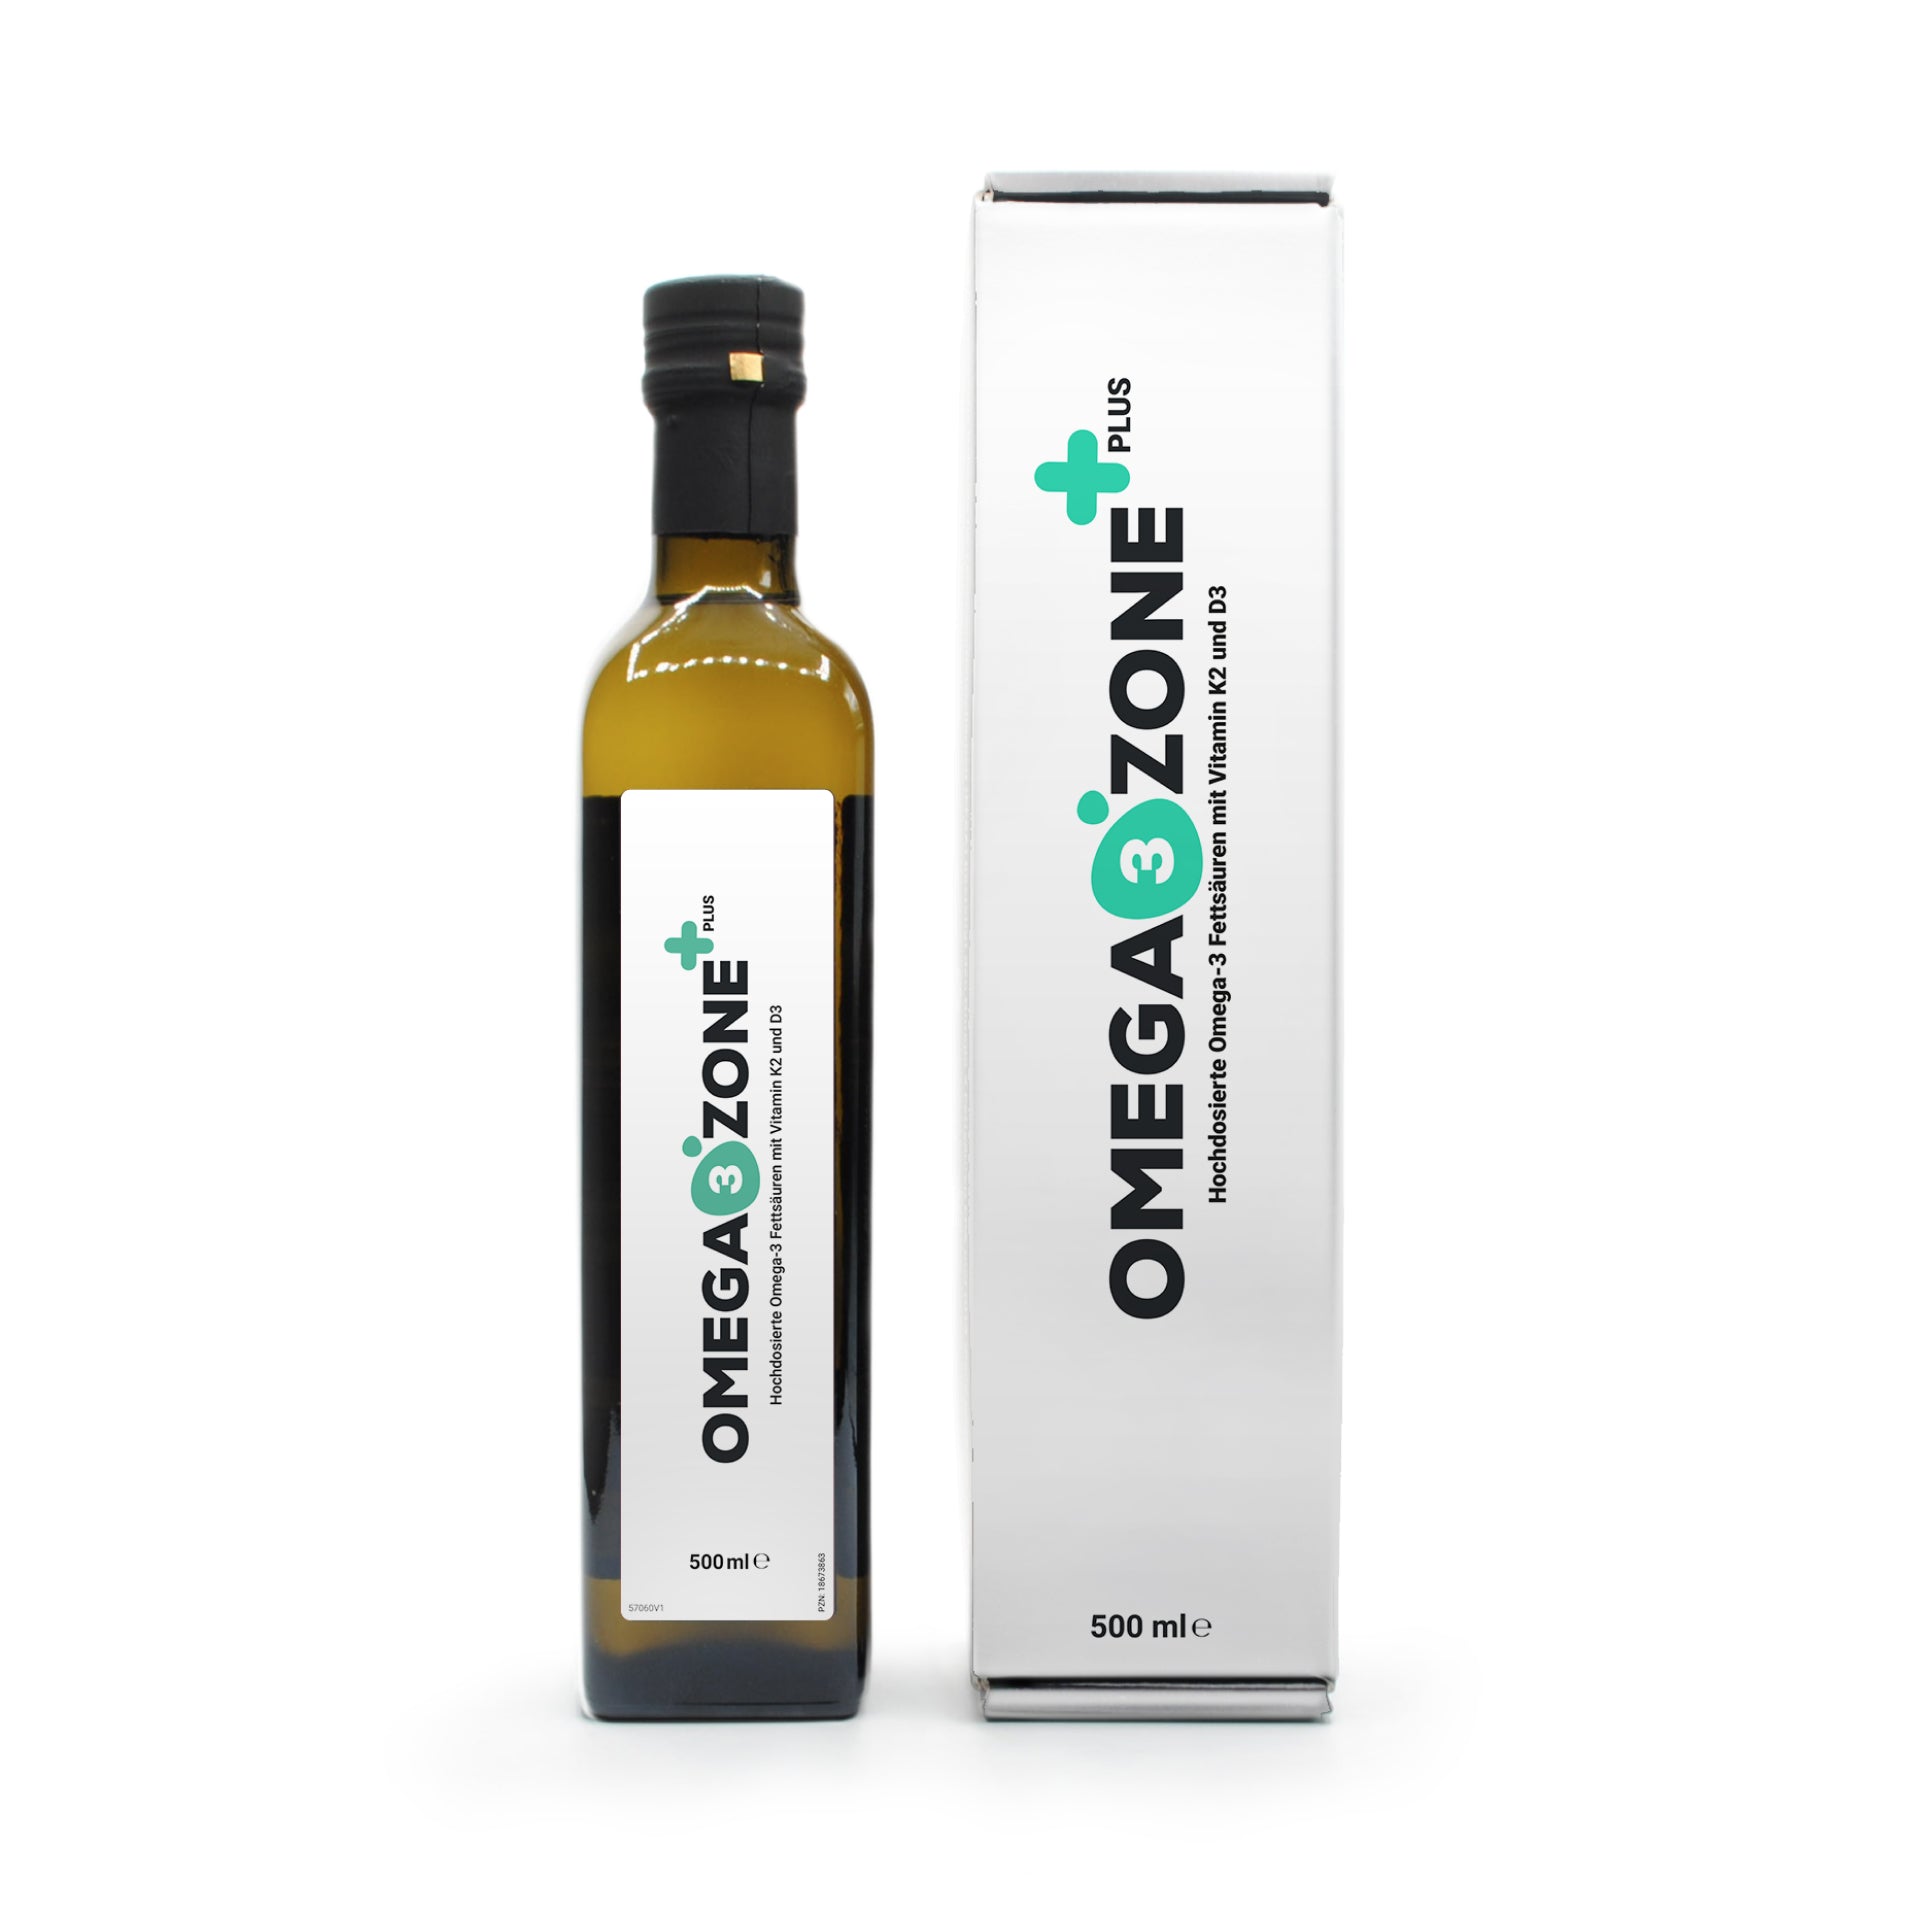 Eine Flasche Omega3zone PLUS-Öl neben einer Schachtel.